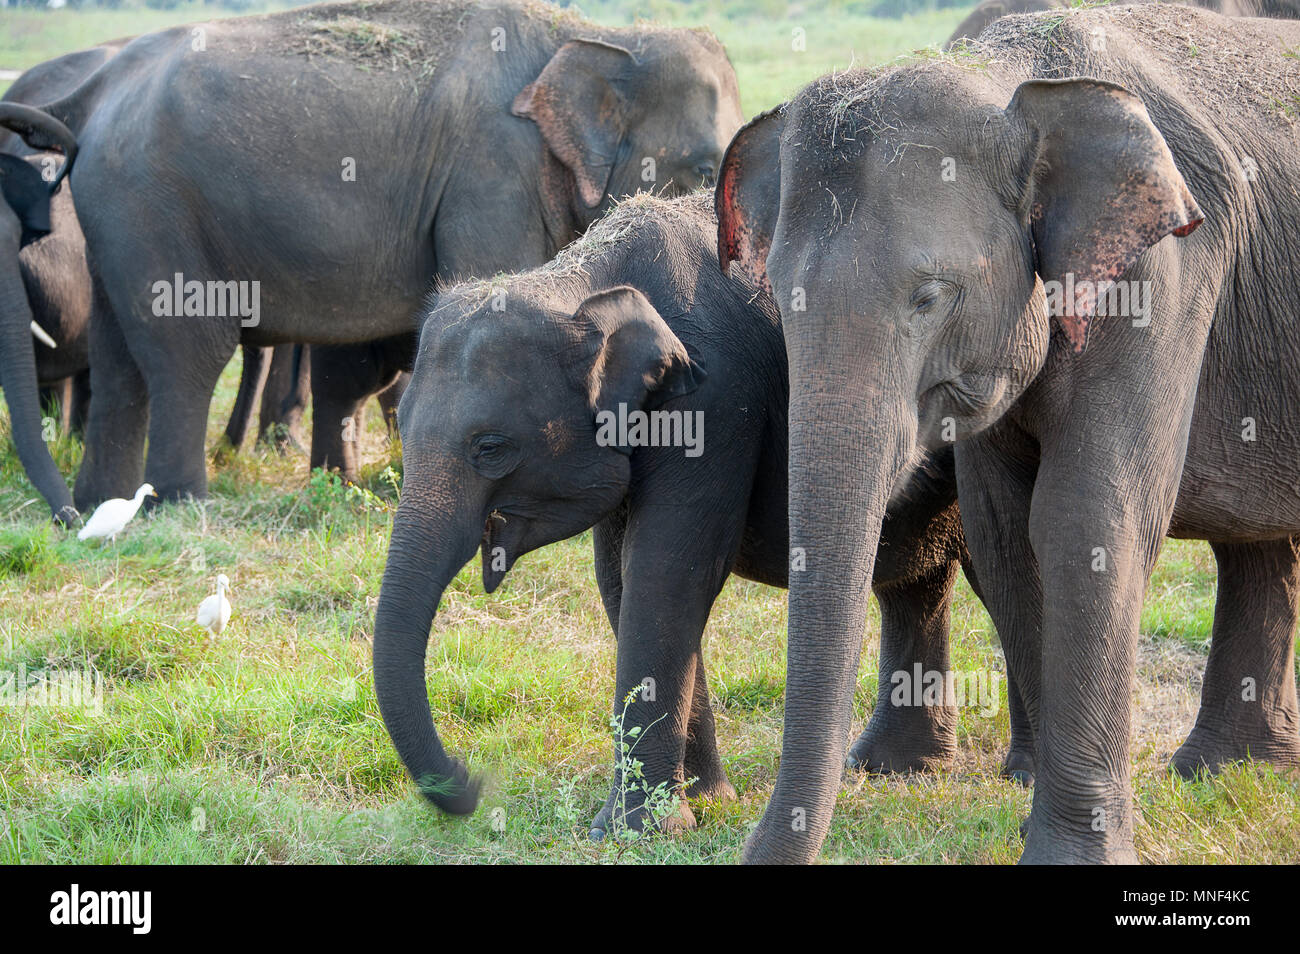 Femme et bébé éléphant indien (Elephas maximus) paître sur les prairies dans Minerriya, Parc national du Sri Lanka. Coucher du soleil pacifique dans un paysage vert Banque D'Images